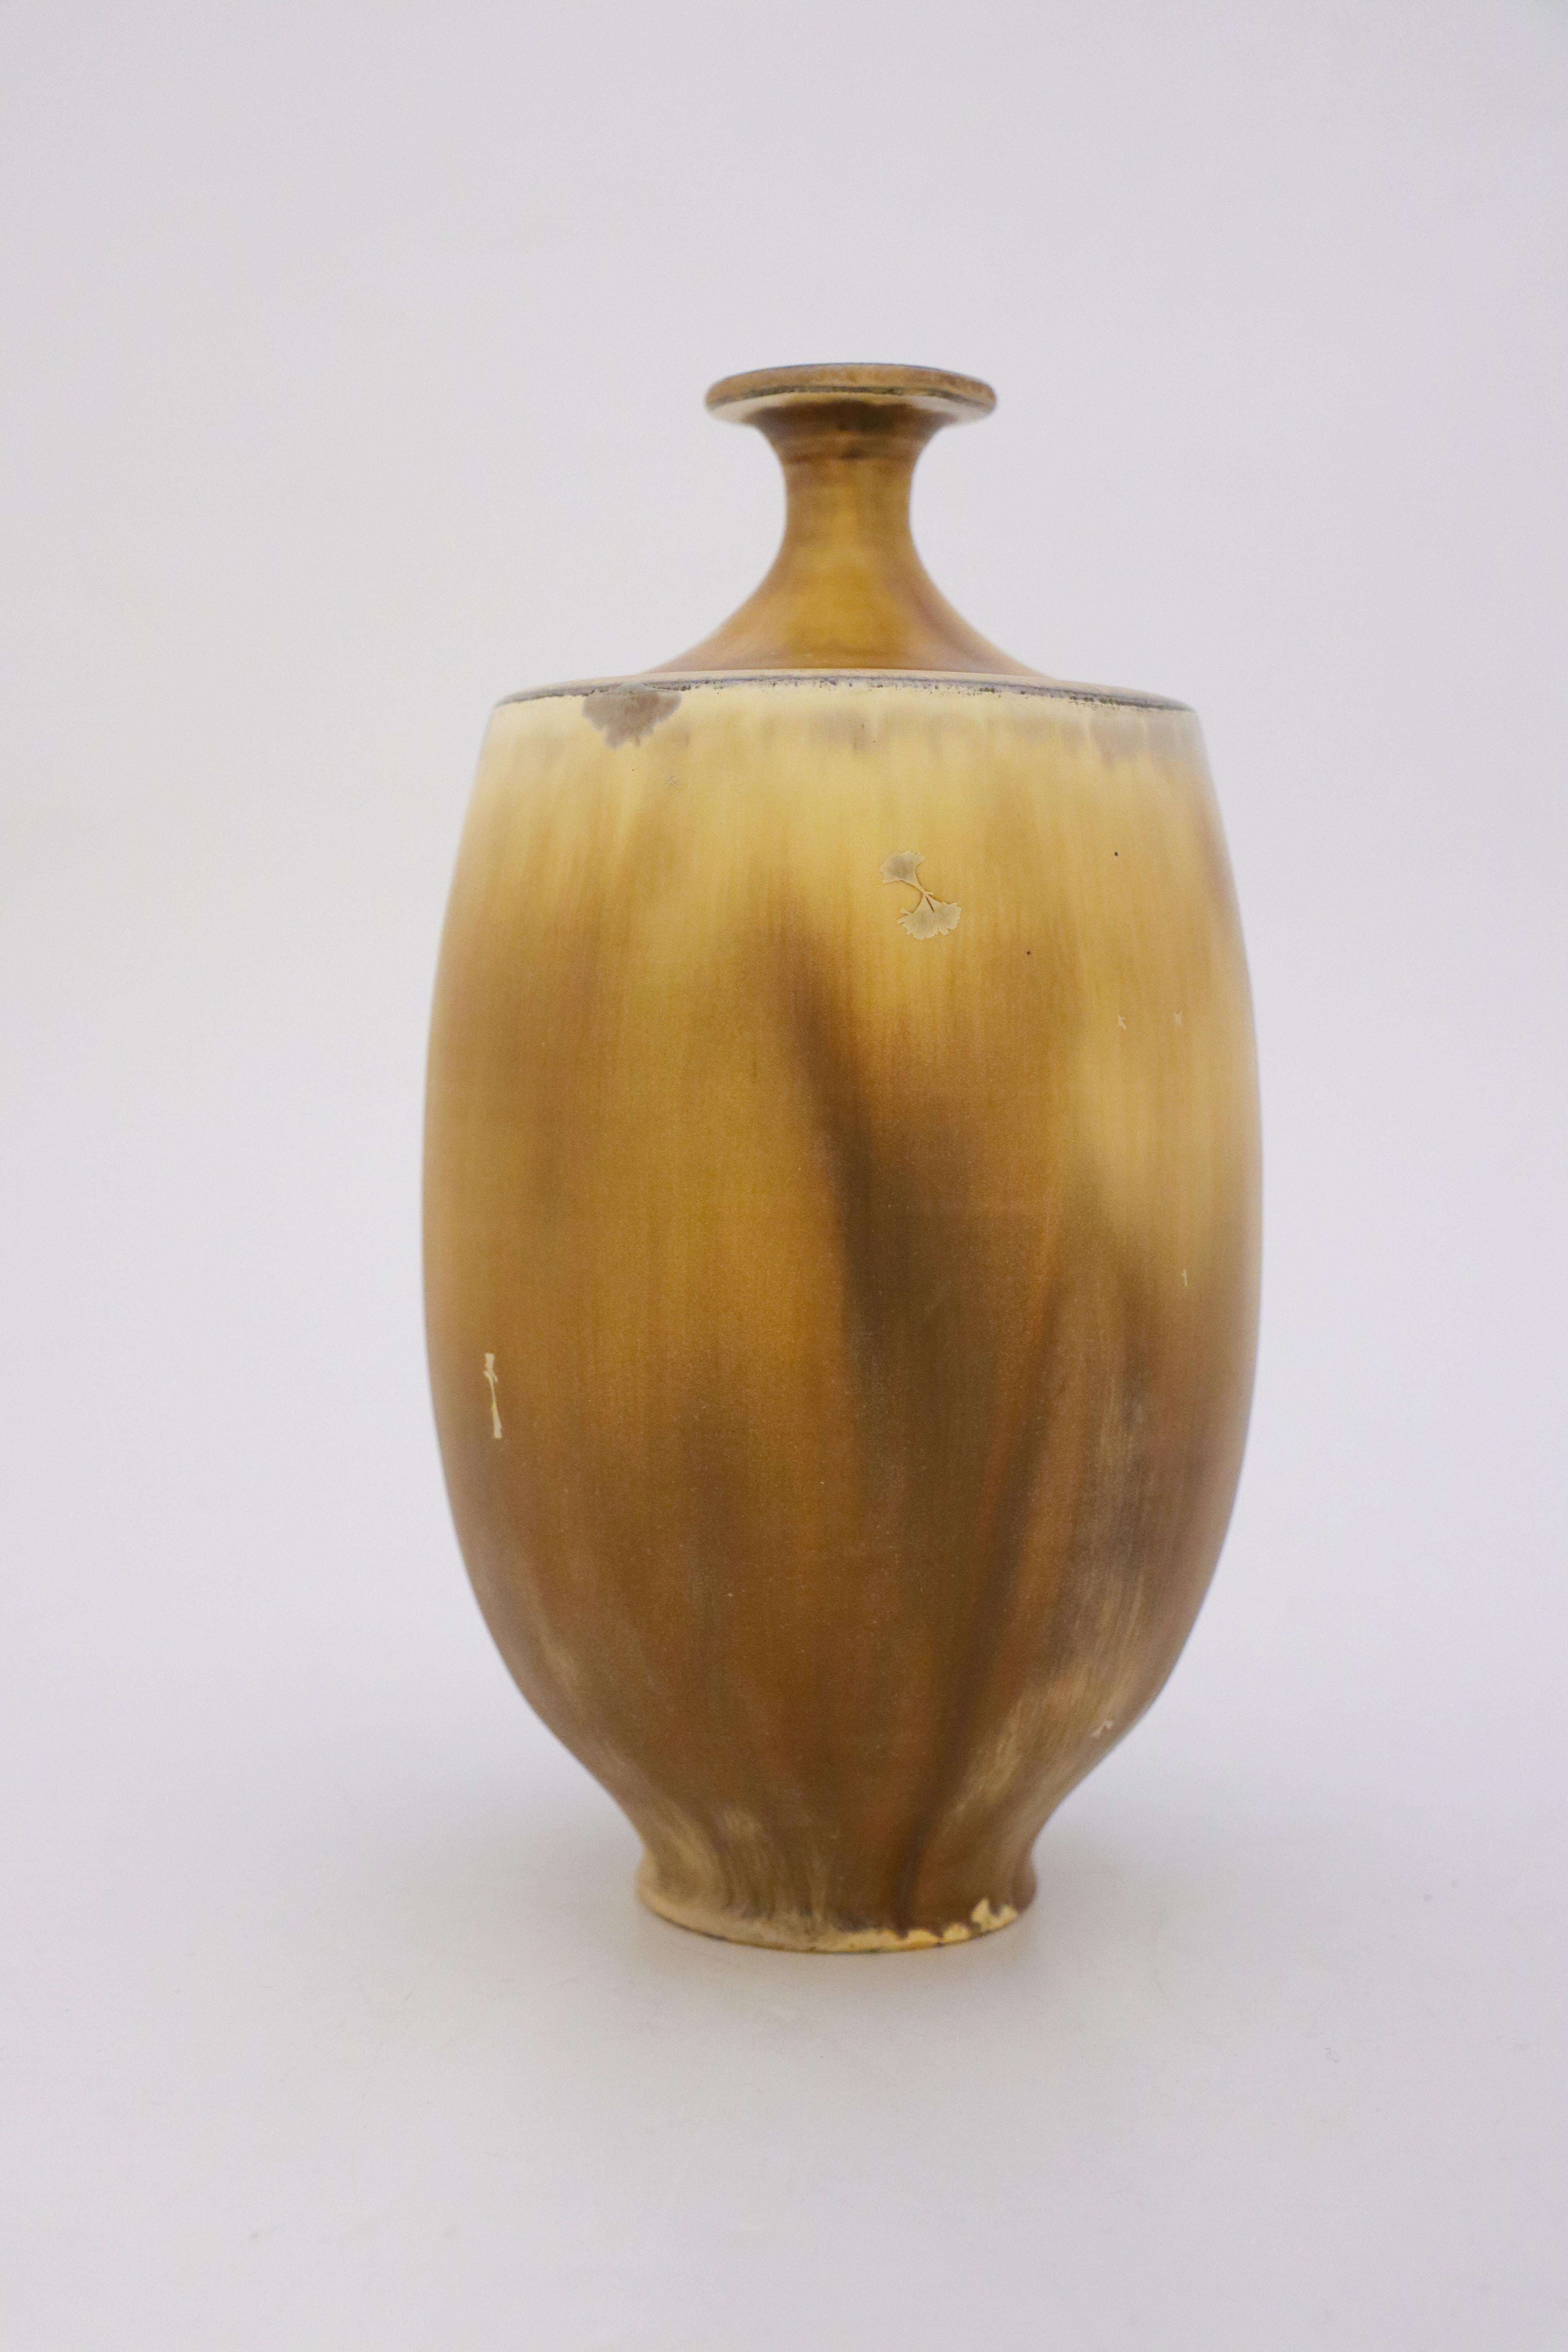 Scandinavian Modern Vase Beige / Brown Crystalline Glaze Isak Isaksson Contemporary Sweden Ceramic